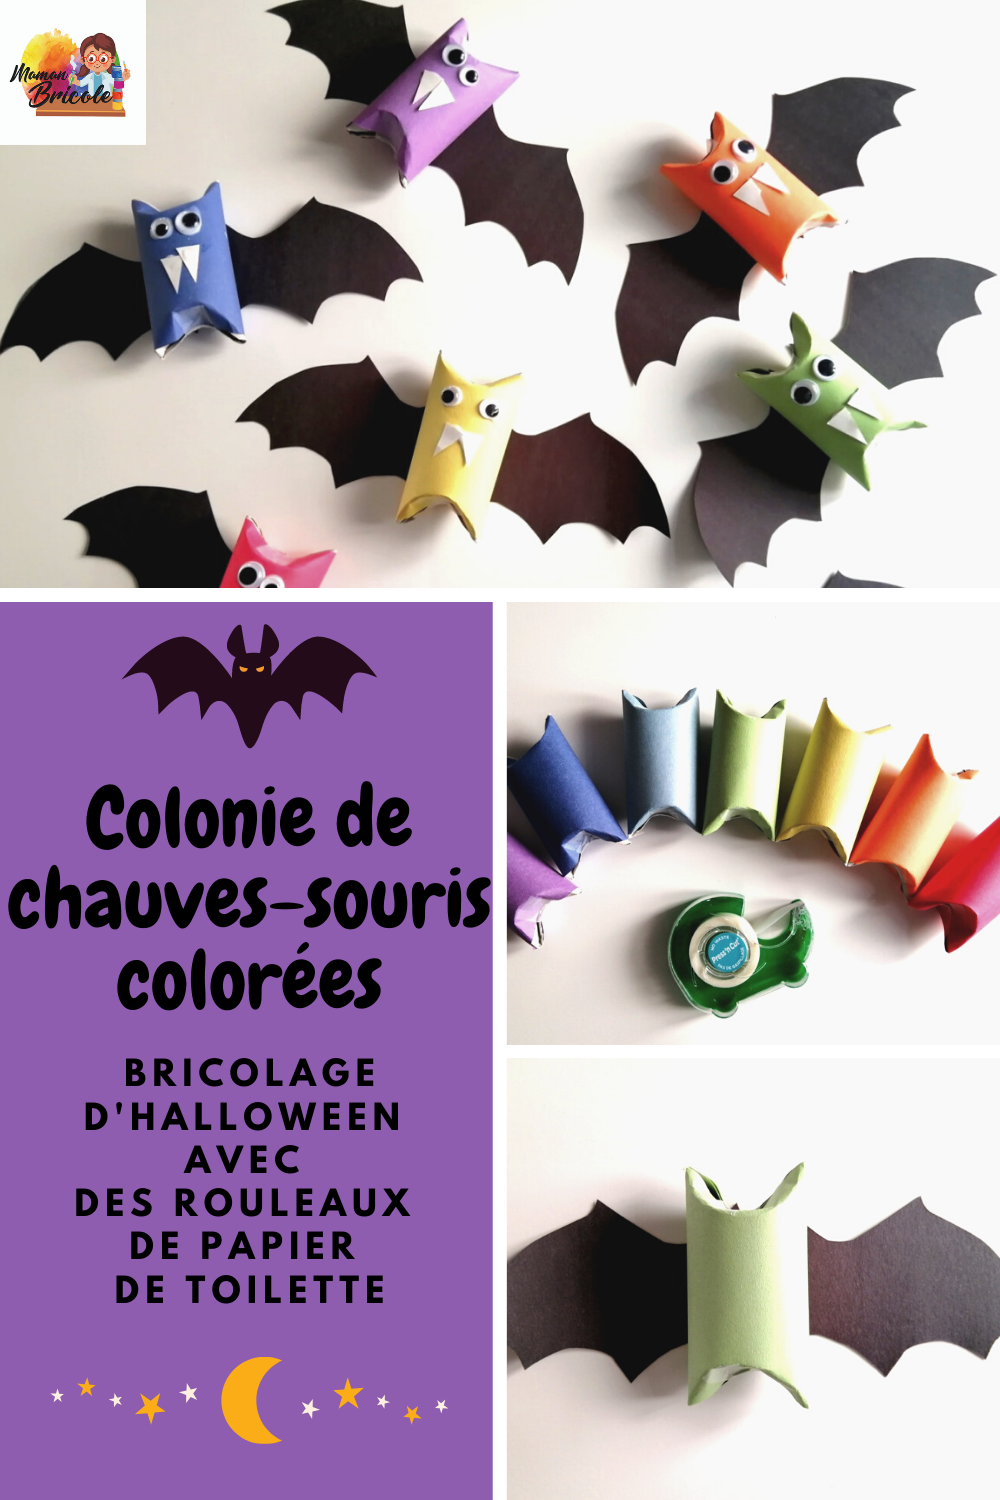 Colonie de chauves-souris colorées - Bricolage d'Halloween avec des rouleaux  de papier de toilette — Je suis une maman | Blogue pour les femmes et les  familles